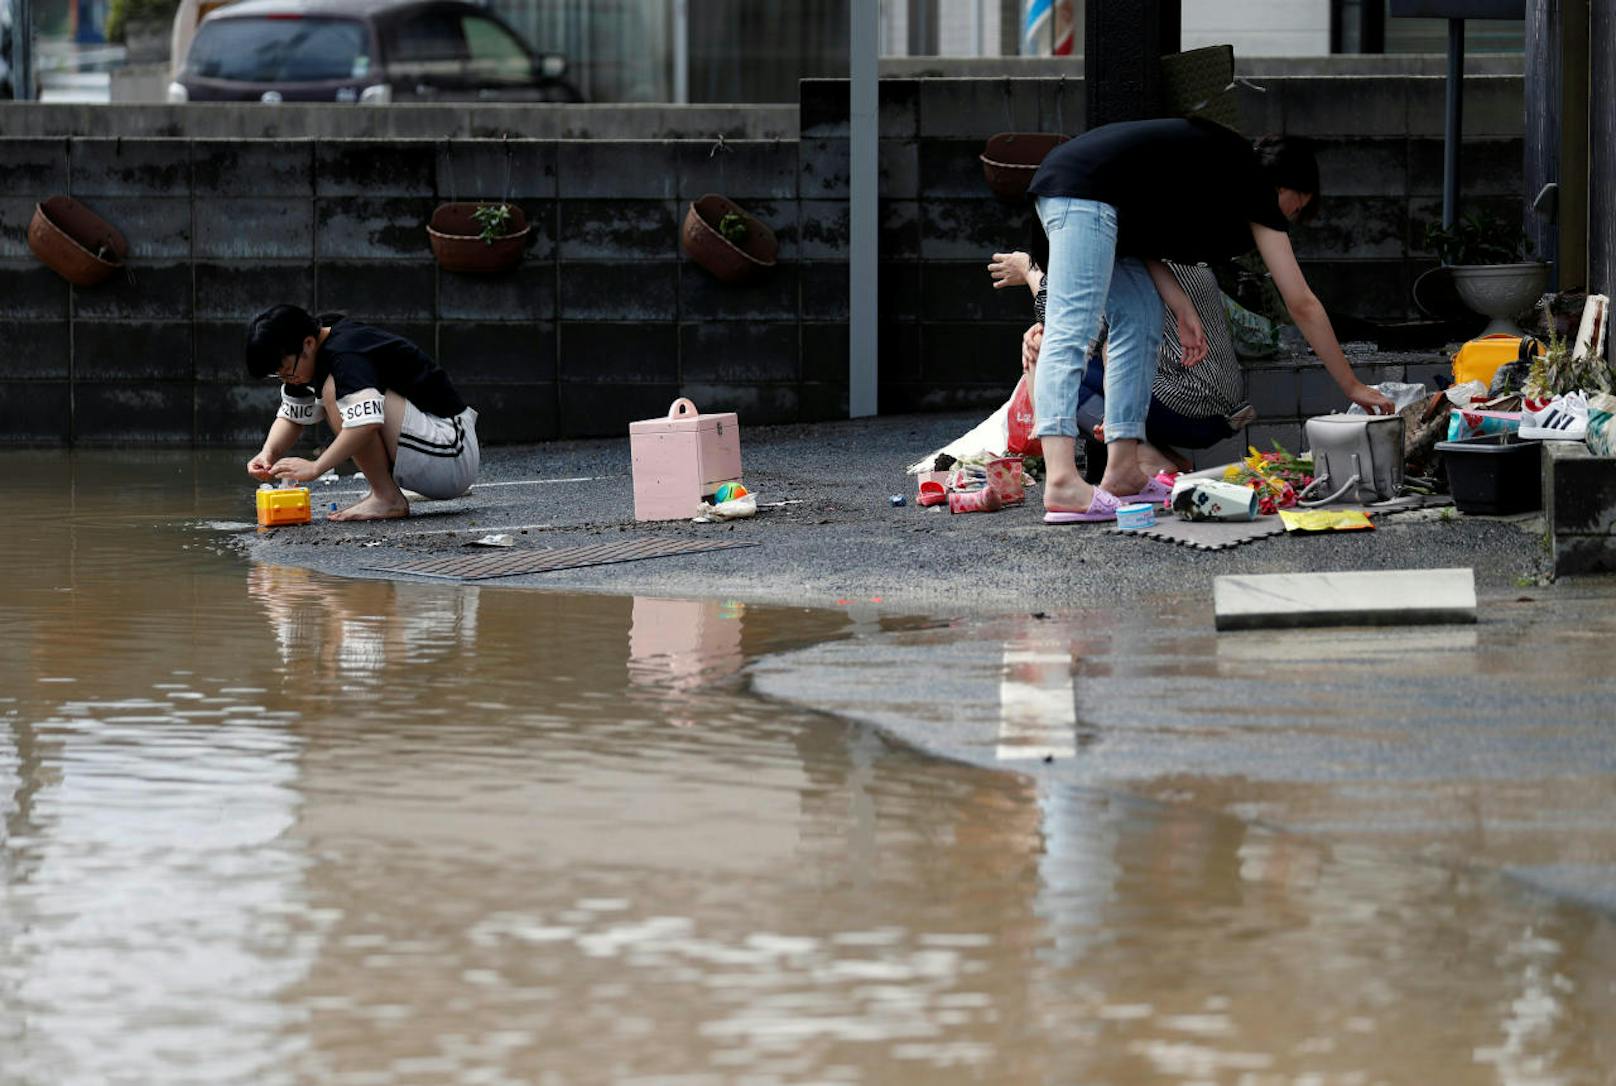 Fotos zeigten schlimme Folgen des seit Donnerstag andauernden Regens: überflutete Straßen, verschlammte Häuser, Erdrutsche.